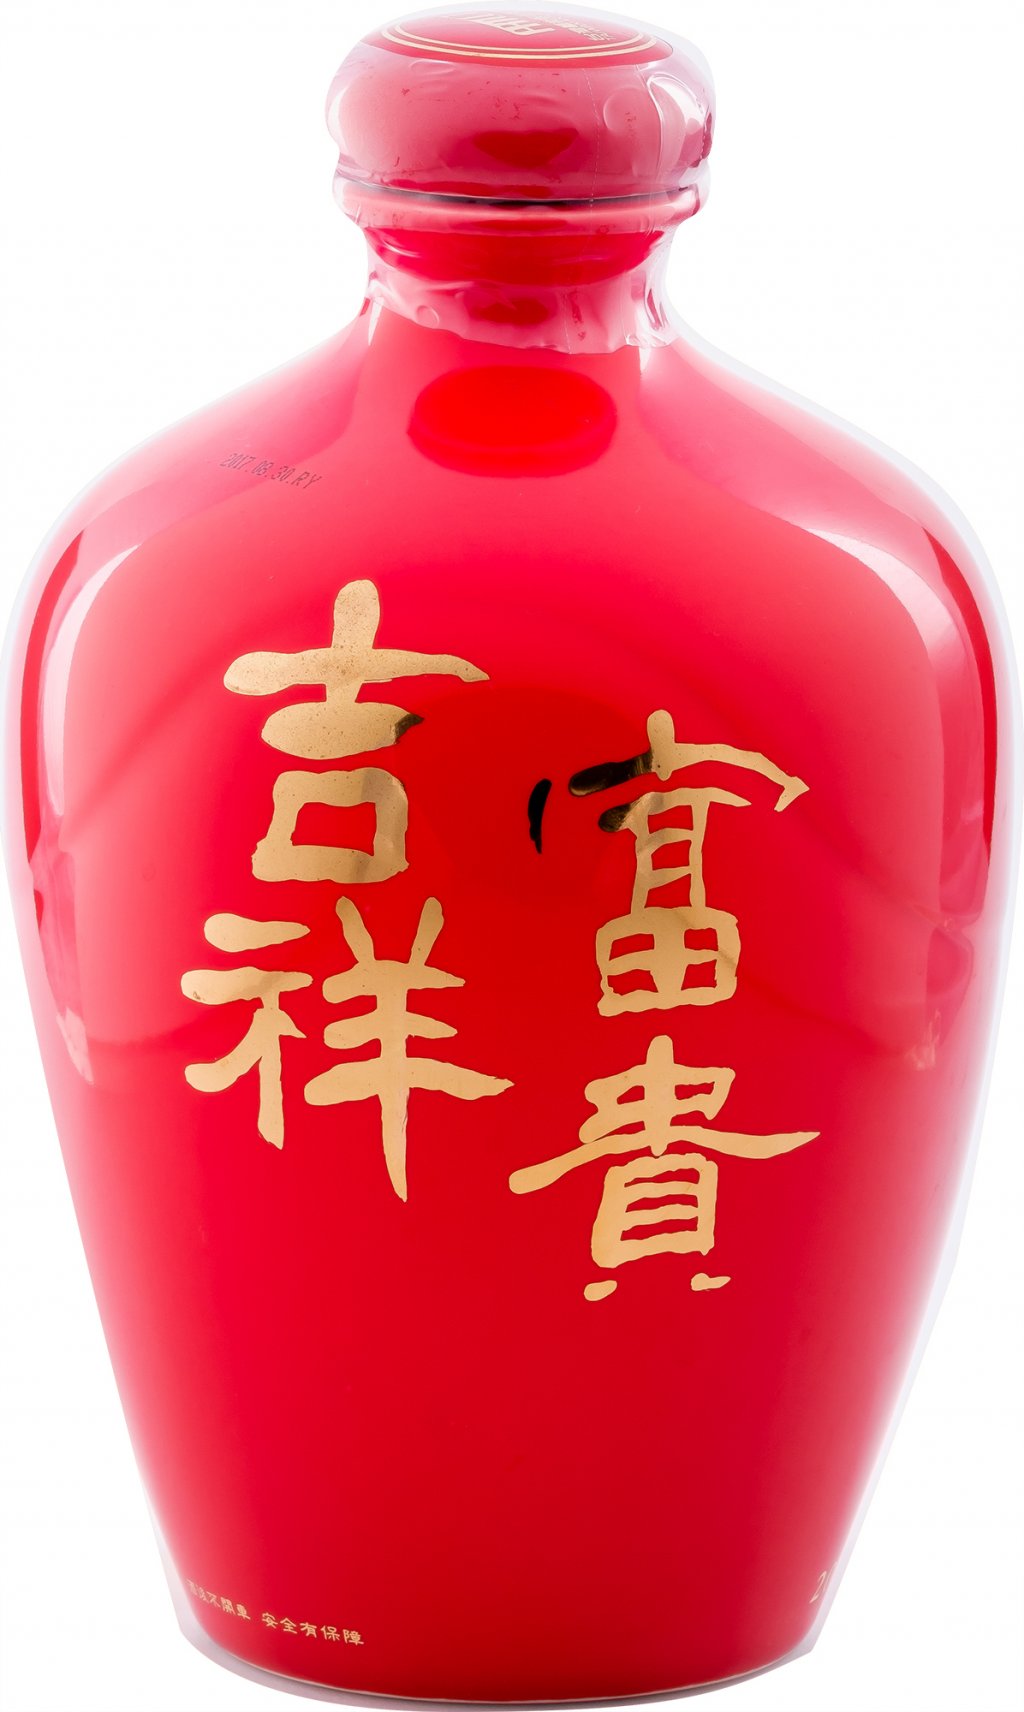 【台湘名家守正展】董加添 /<br>富貴吉祥(二) | 書畫瓷瓶高粱酒